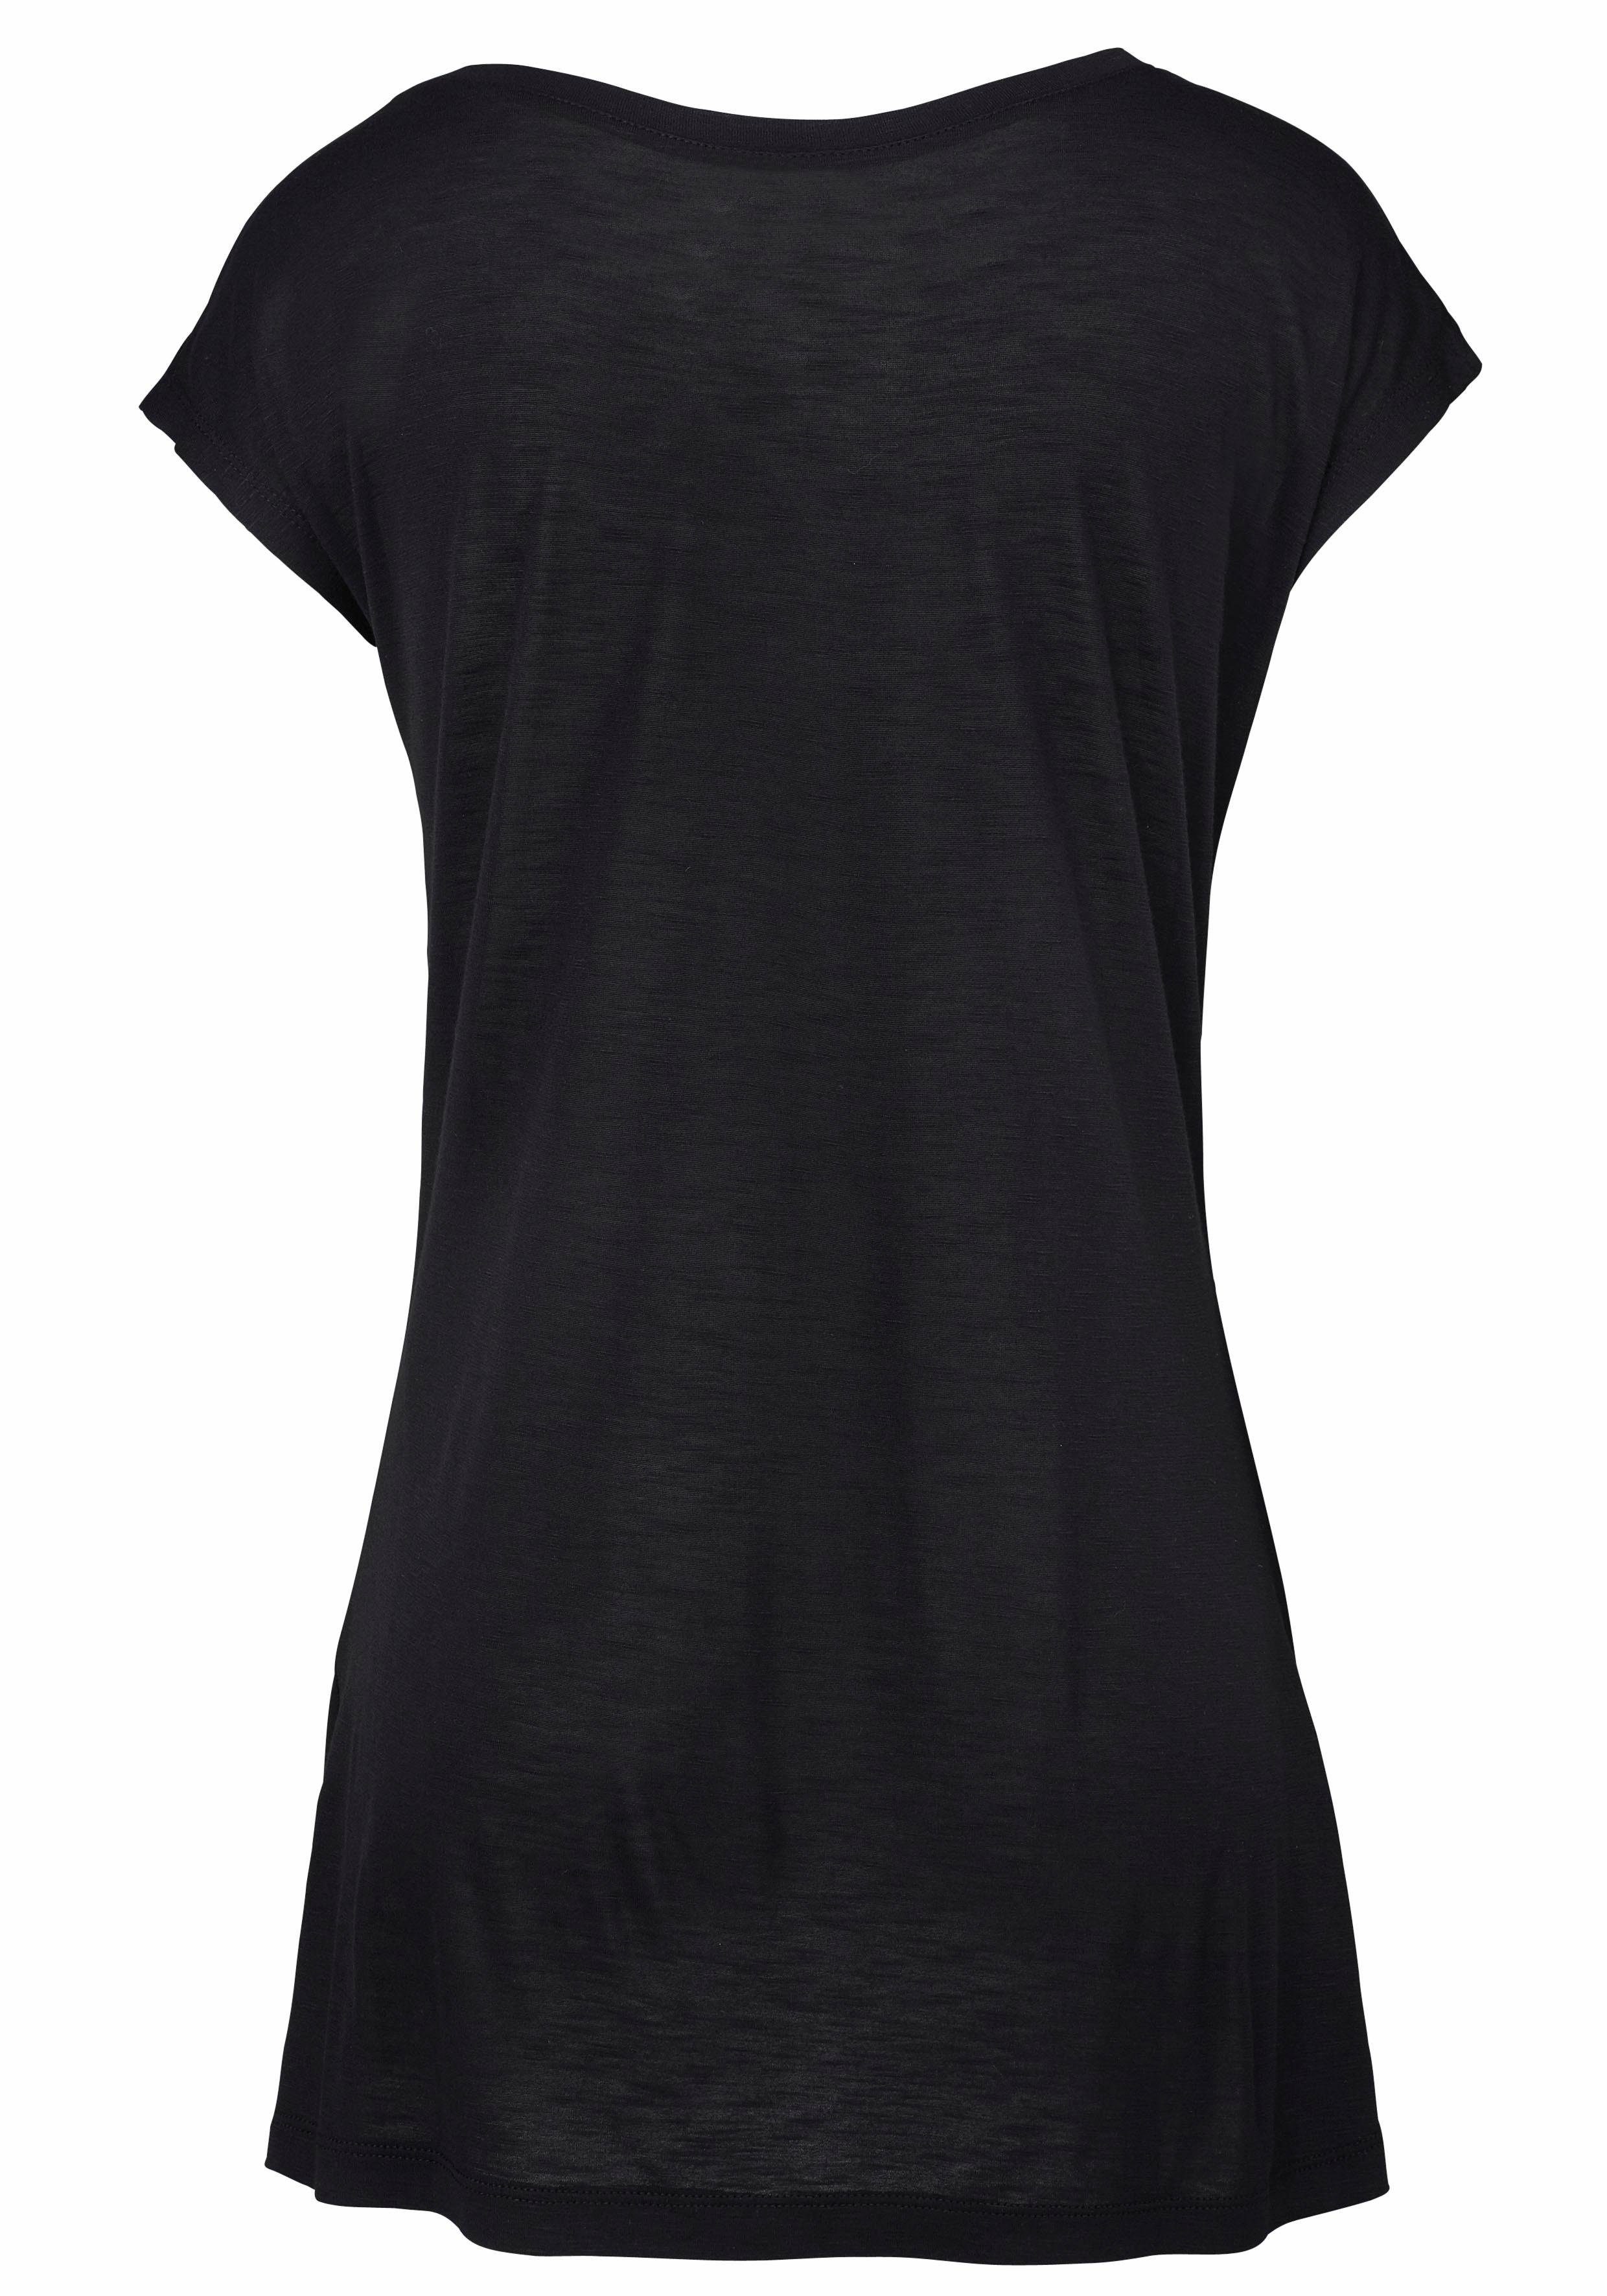 Strandshirt schwarz mit Ethno-Look, casual und LASCANA glänzendem Print Effekt,